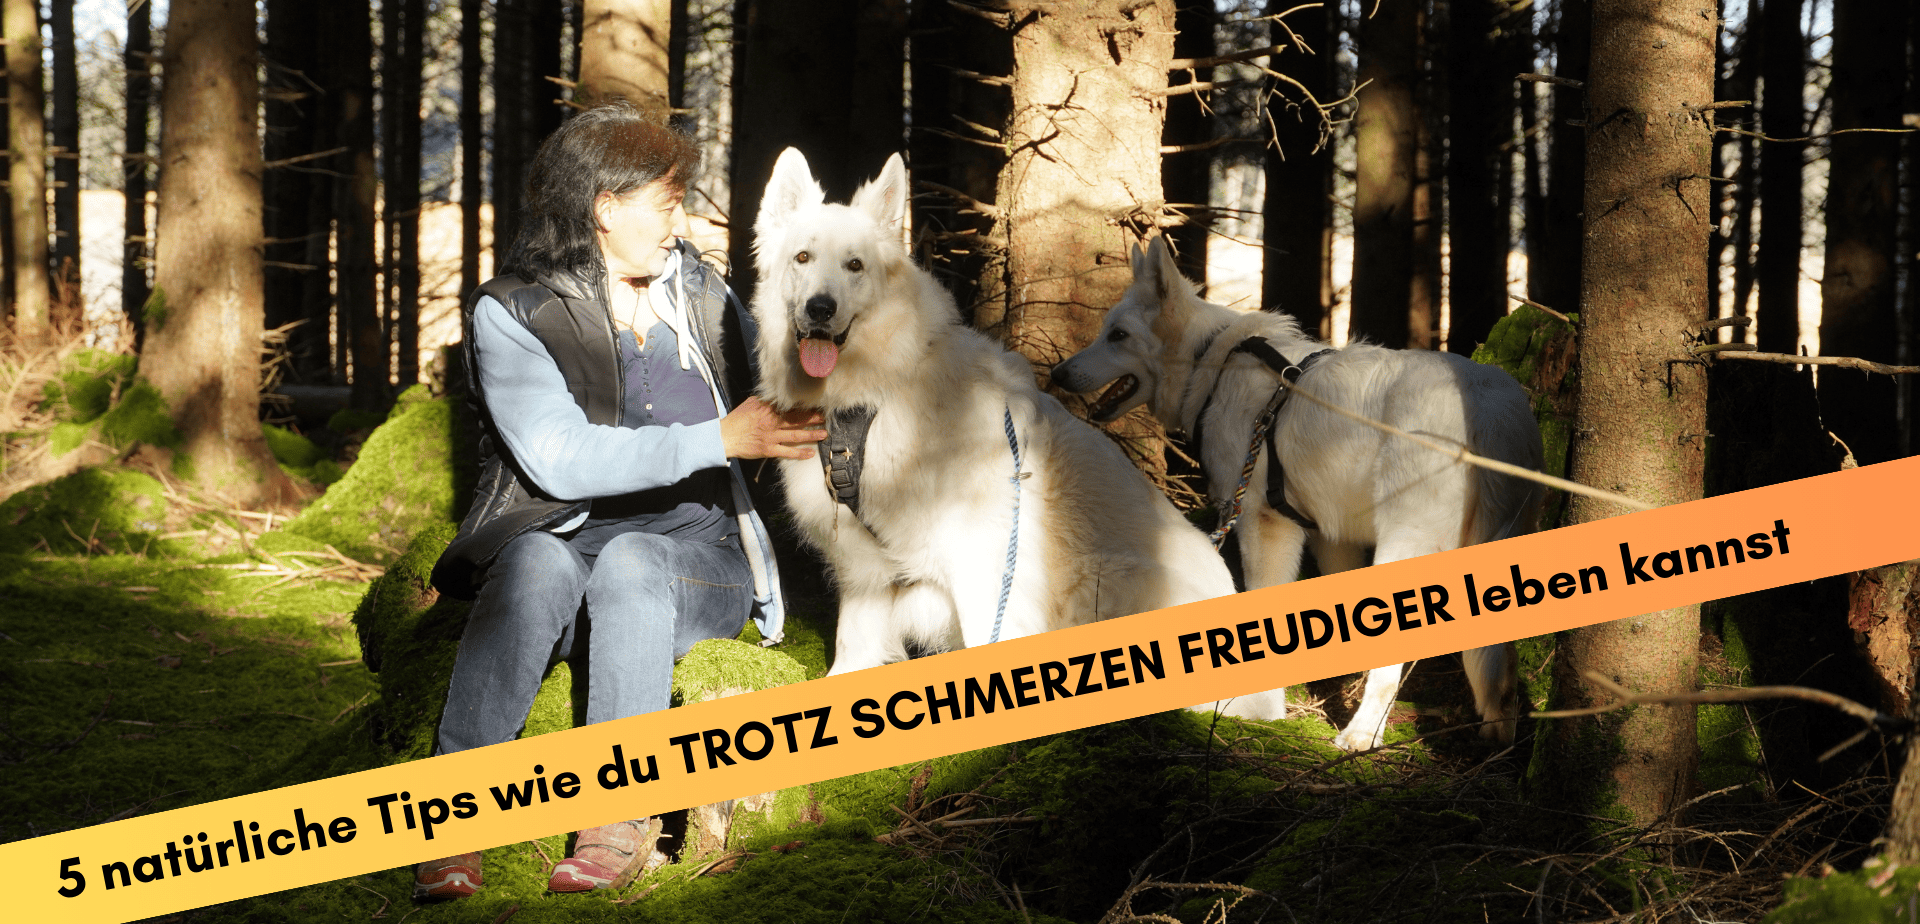 Marianne mit 2 weissen Schäferhunden in einer Lichtung im Wald